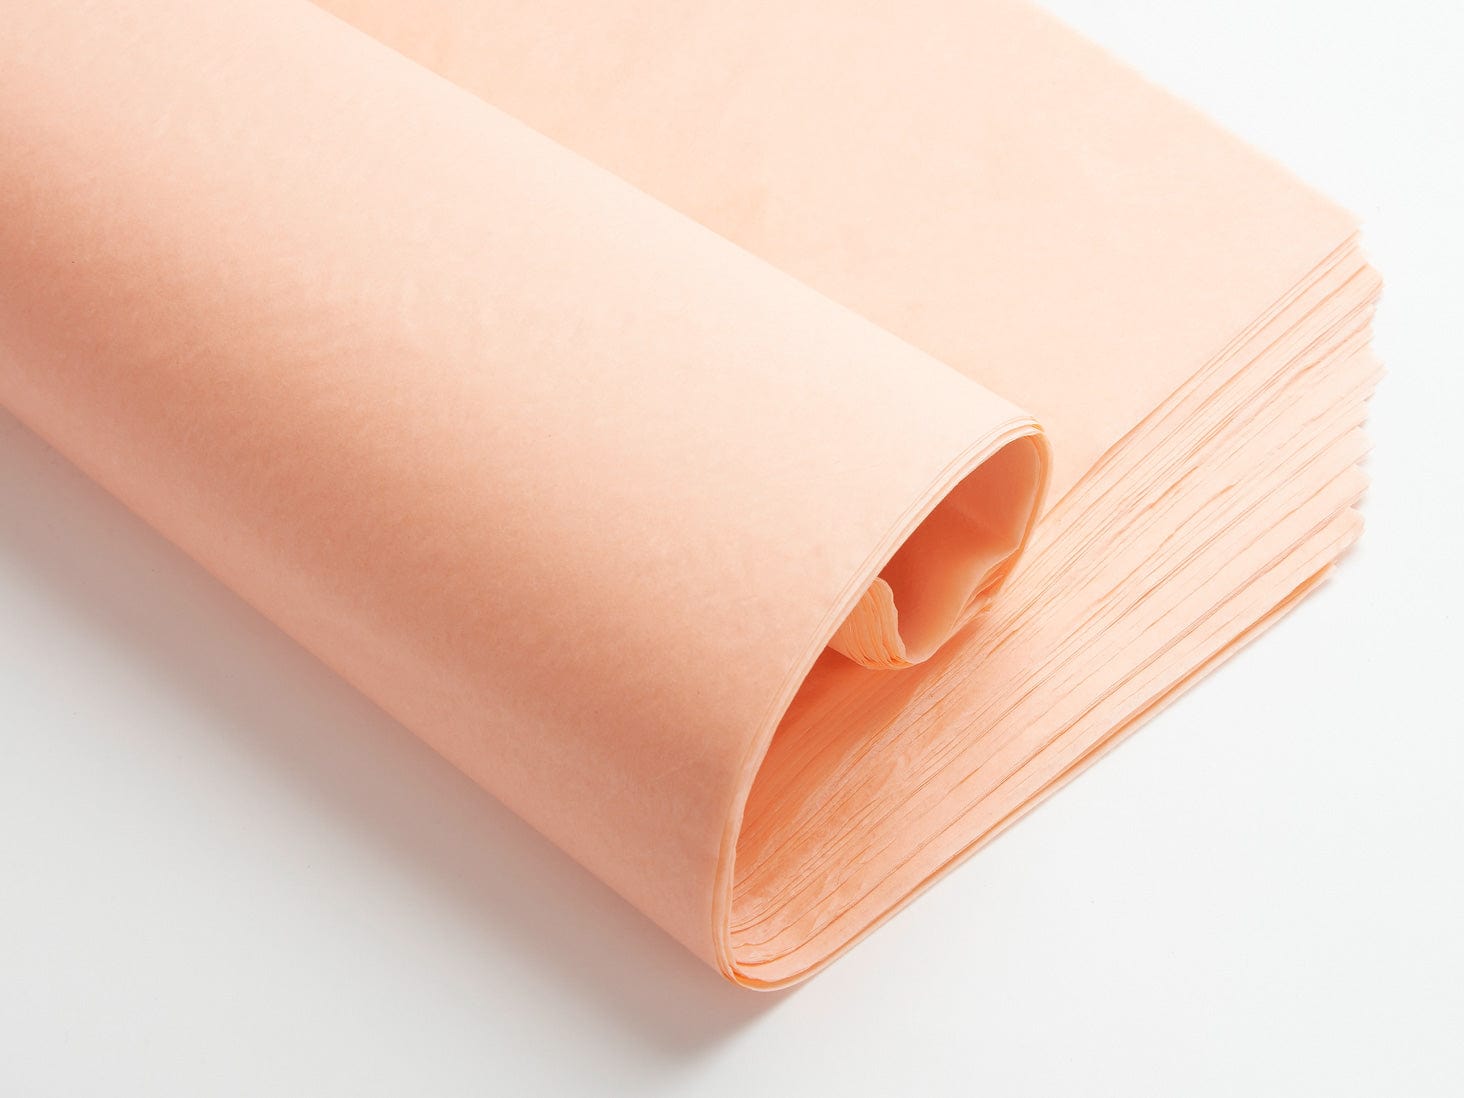 Orange Tissue paper, Colored tissue Paper, Tissue Paper